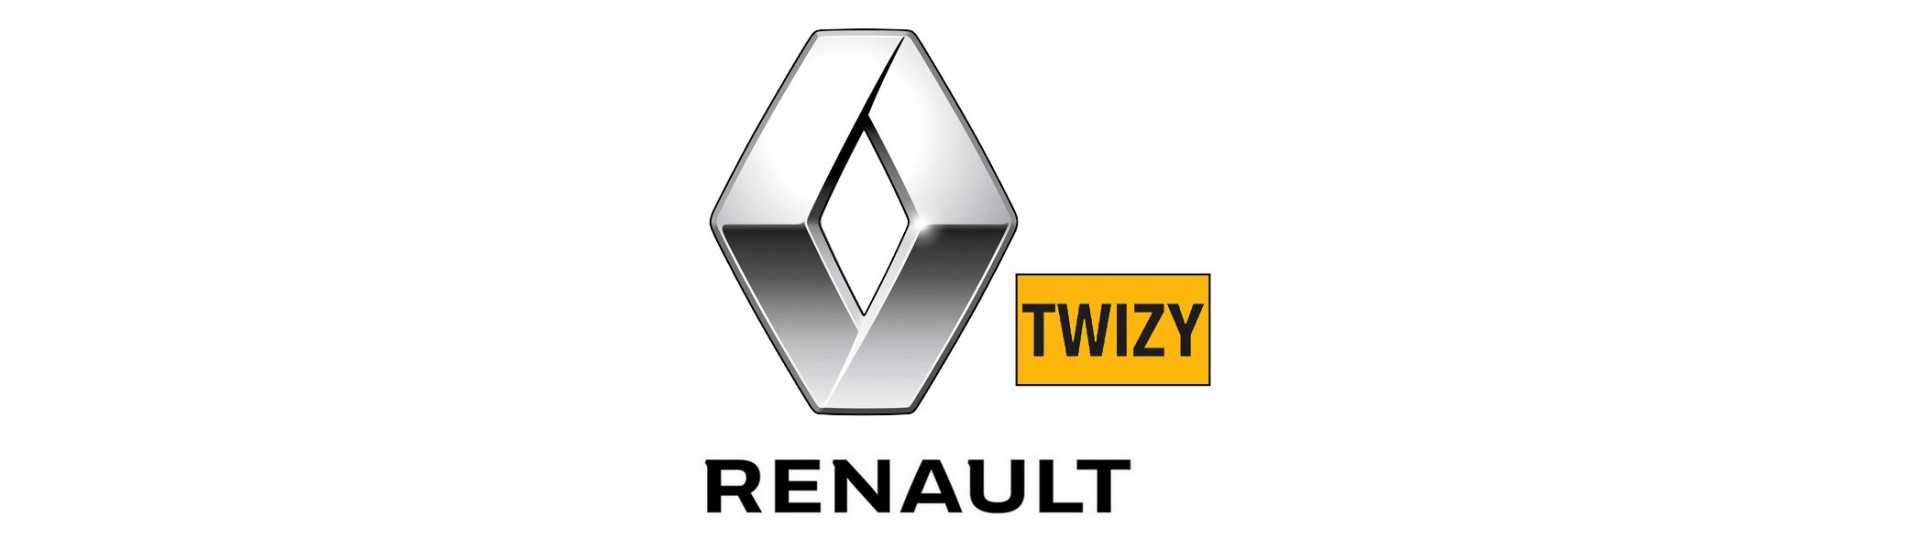 Mejor indicador de precio para coche sin permiso Renault Twizy